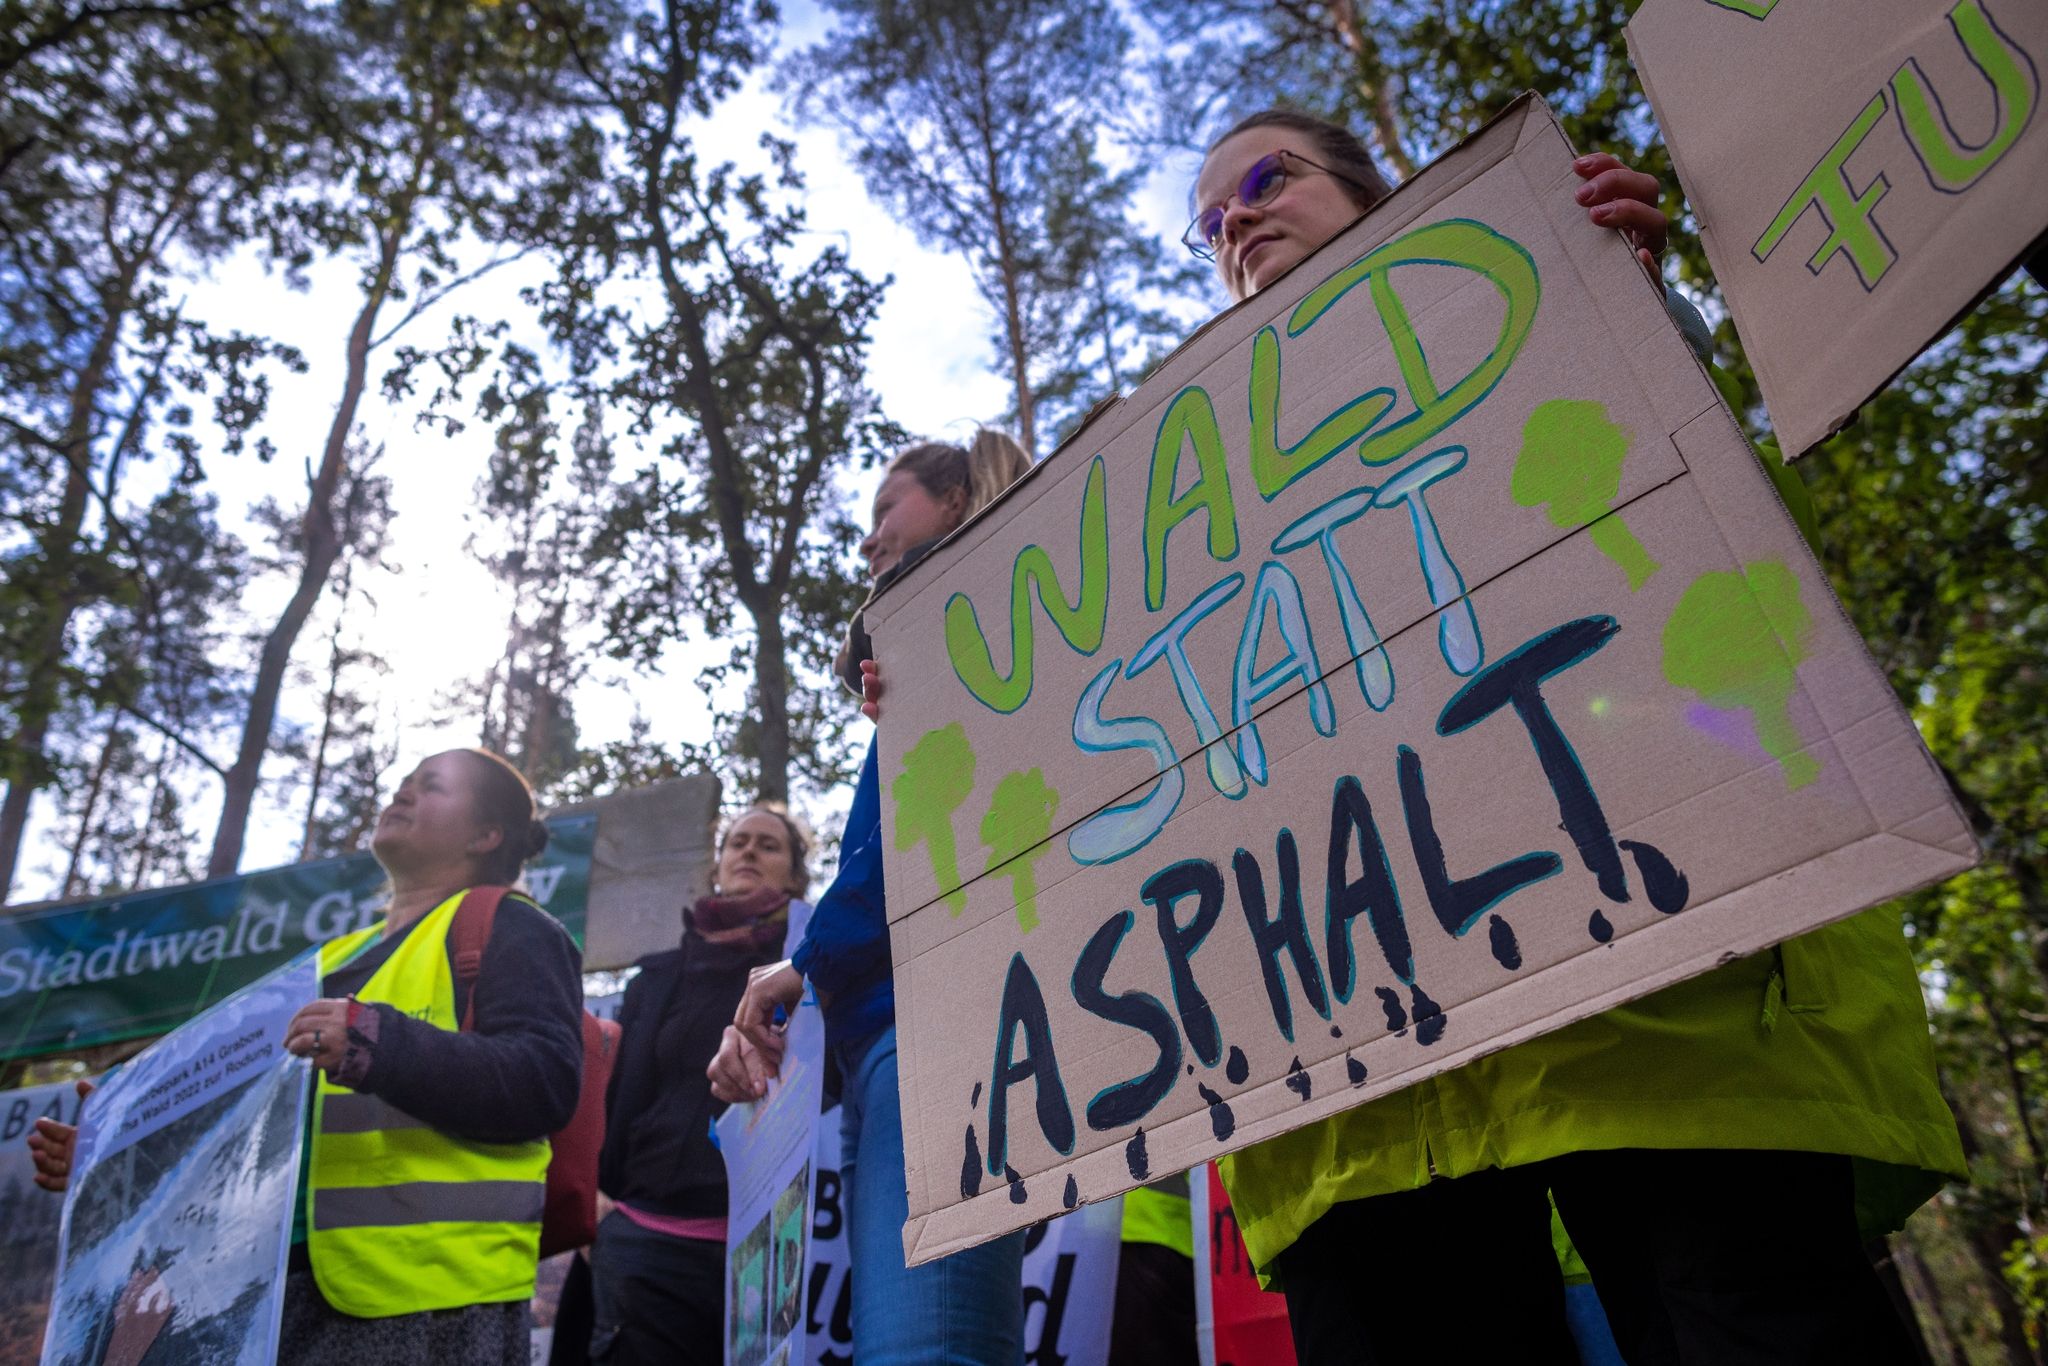 Umweltschützer protestieren mit einer Aktion am Waldrand gegen die geplante Rodung des Stadtwalds Grabow.